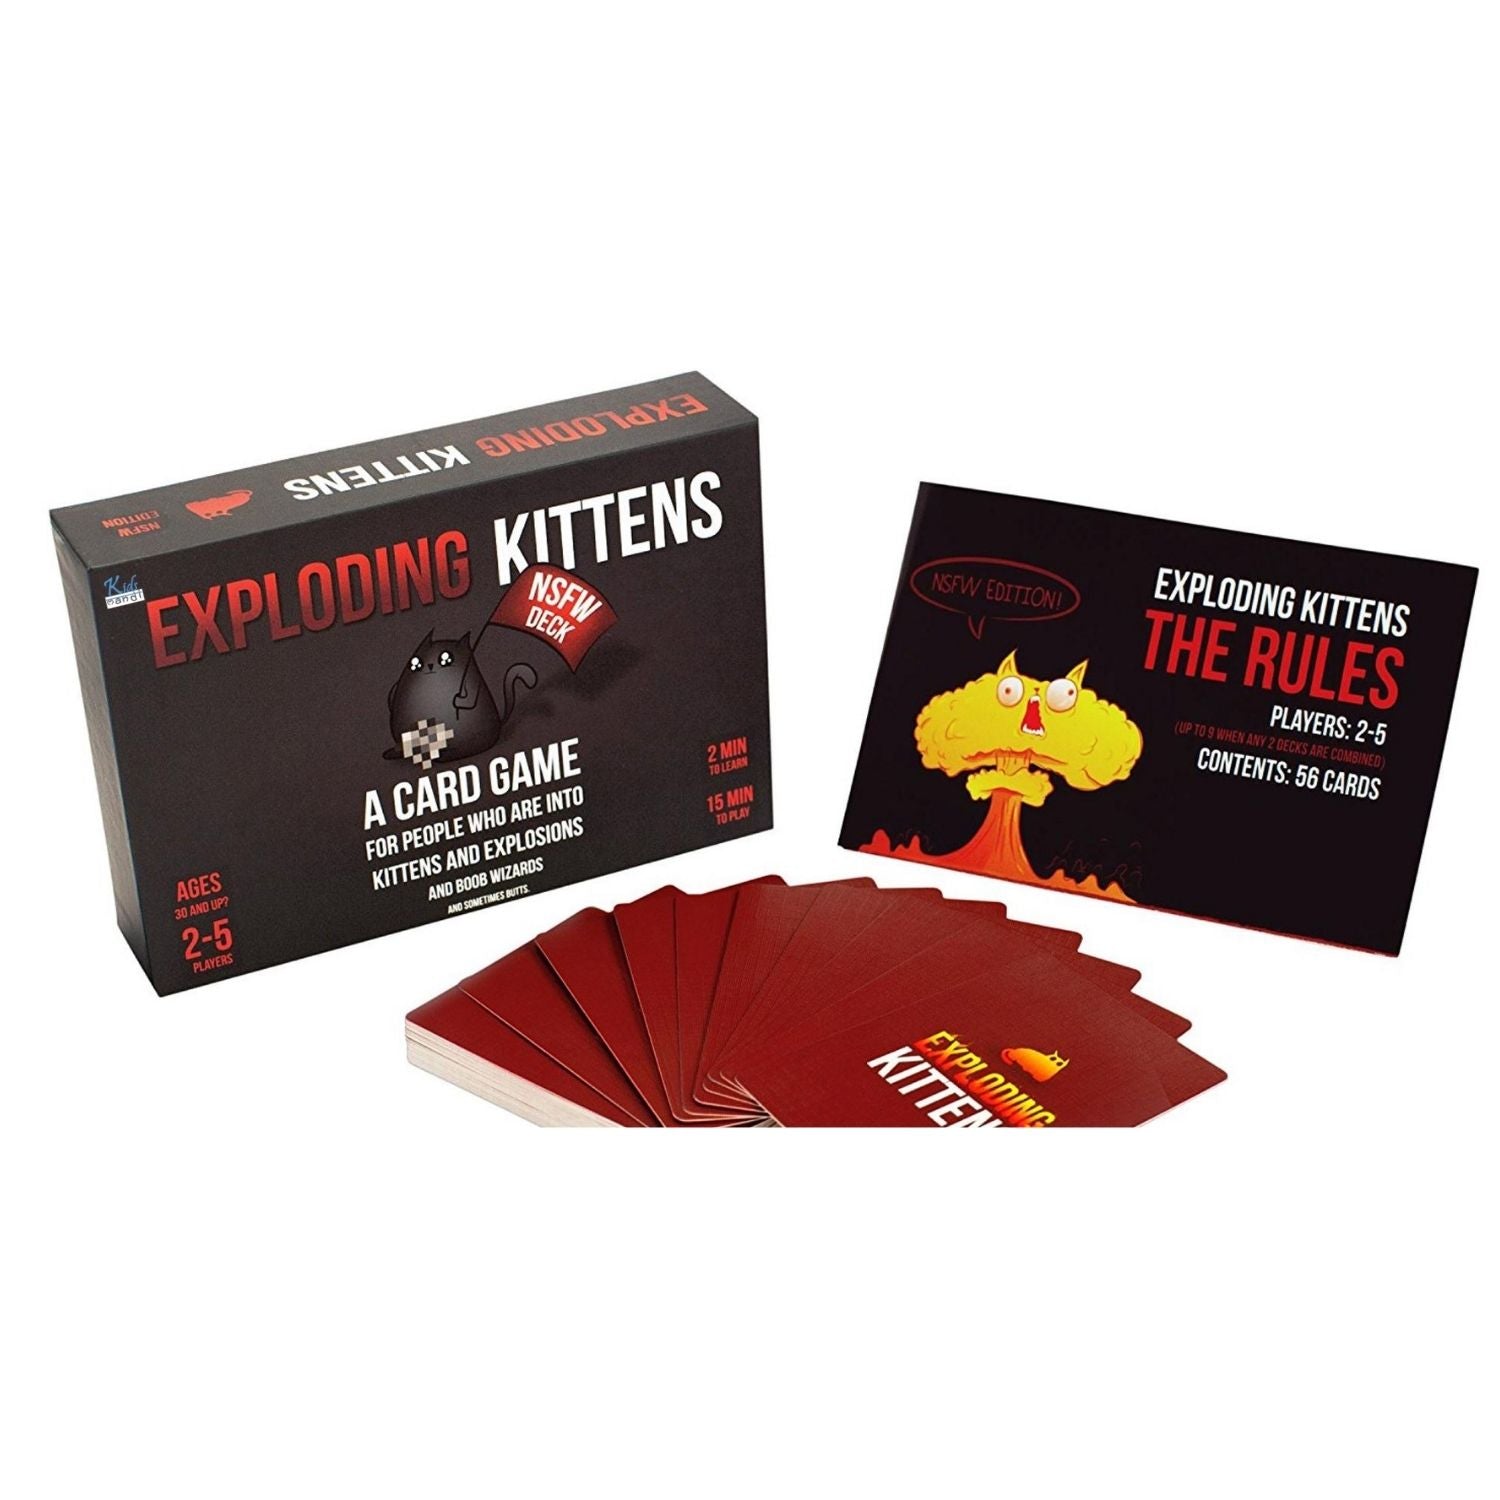 KIDS MANDI - Exploding Kittens card game for children.